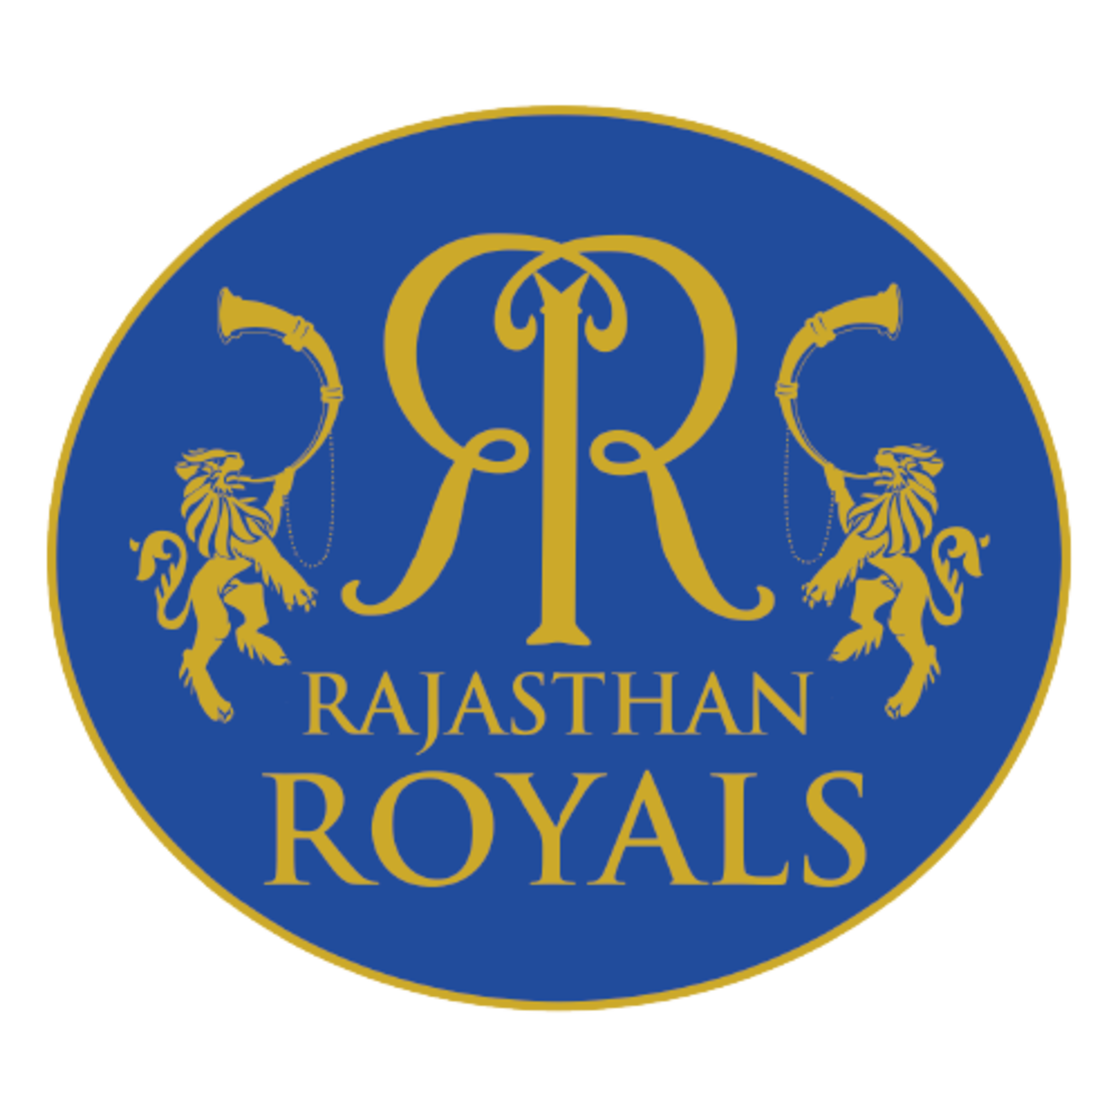 Rajasthan Royals logo